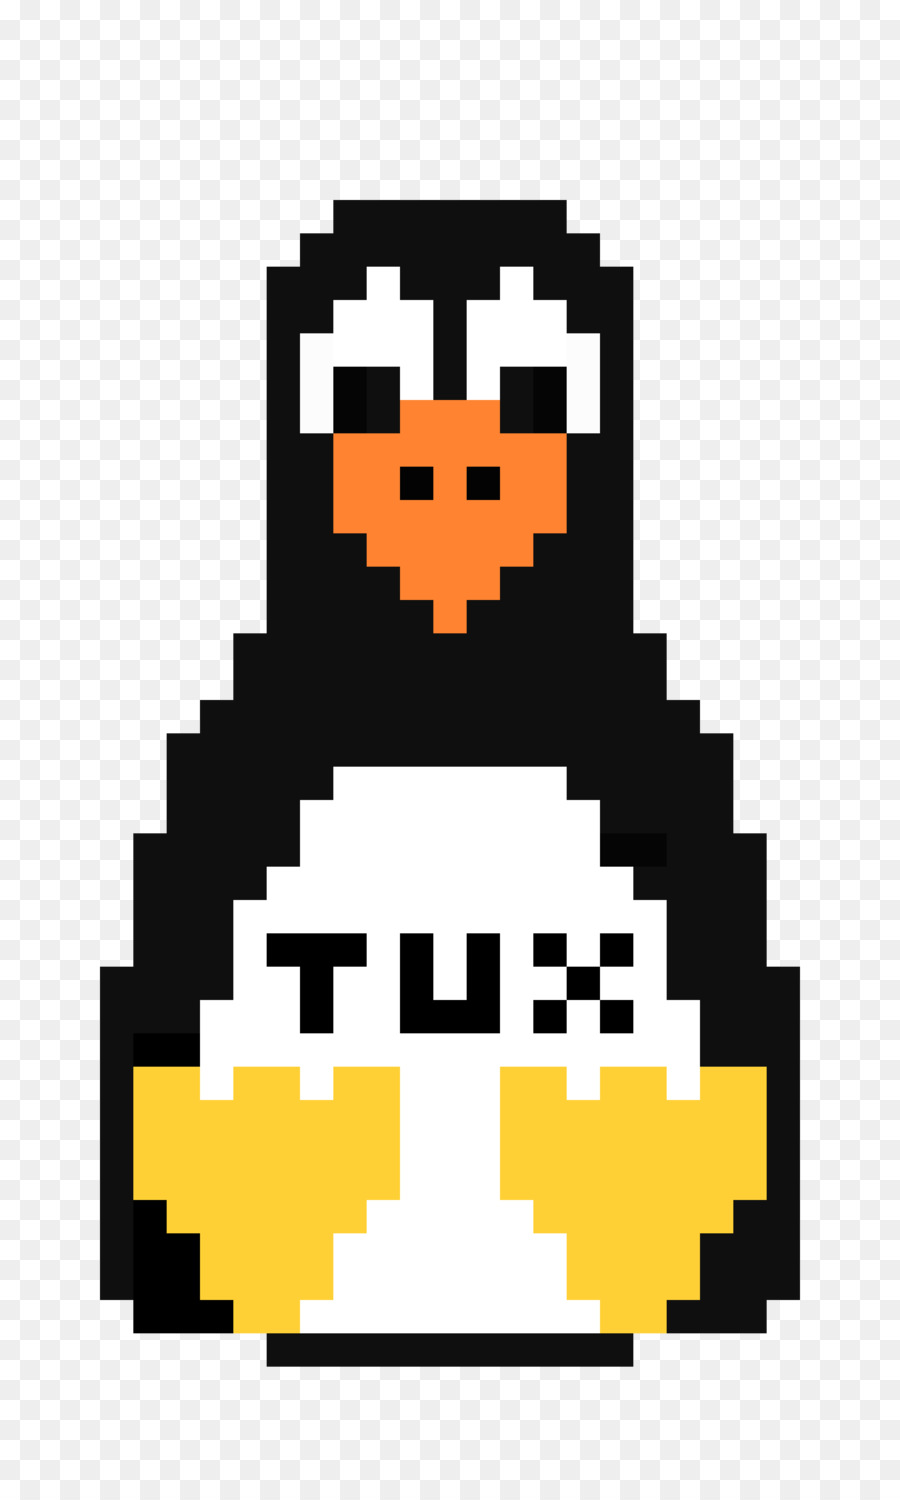 Pinguino Tux di Linux e Unix: Visual QuickStart Guide Pixel art - Pinguino